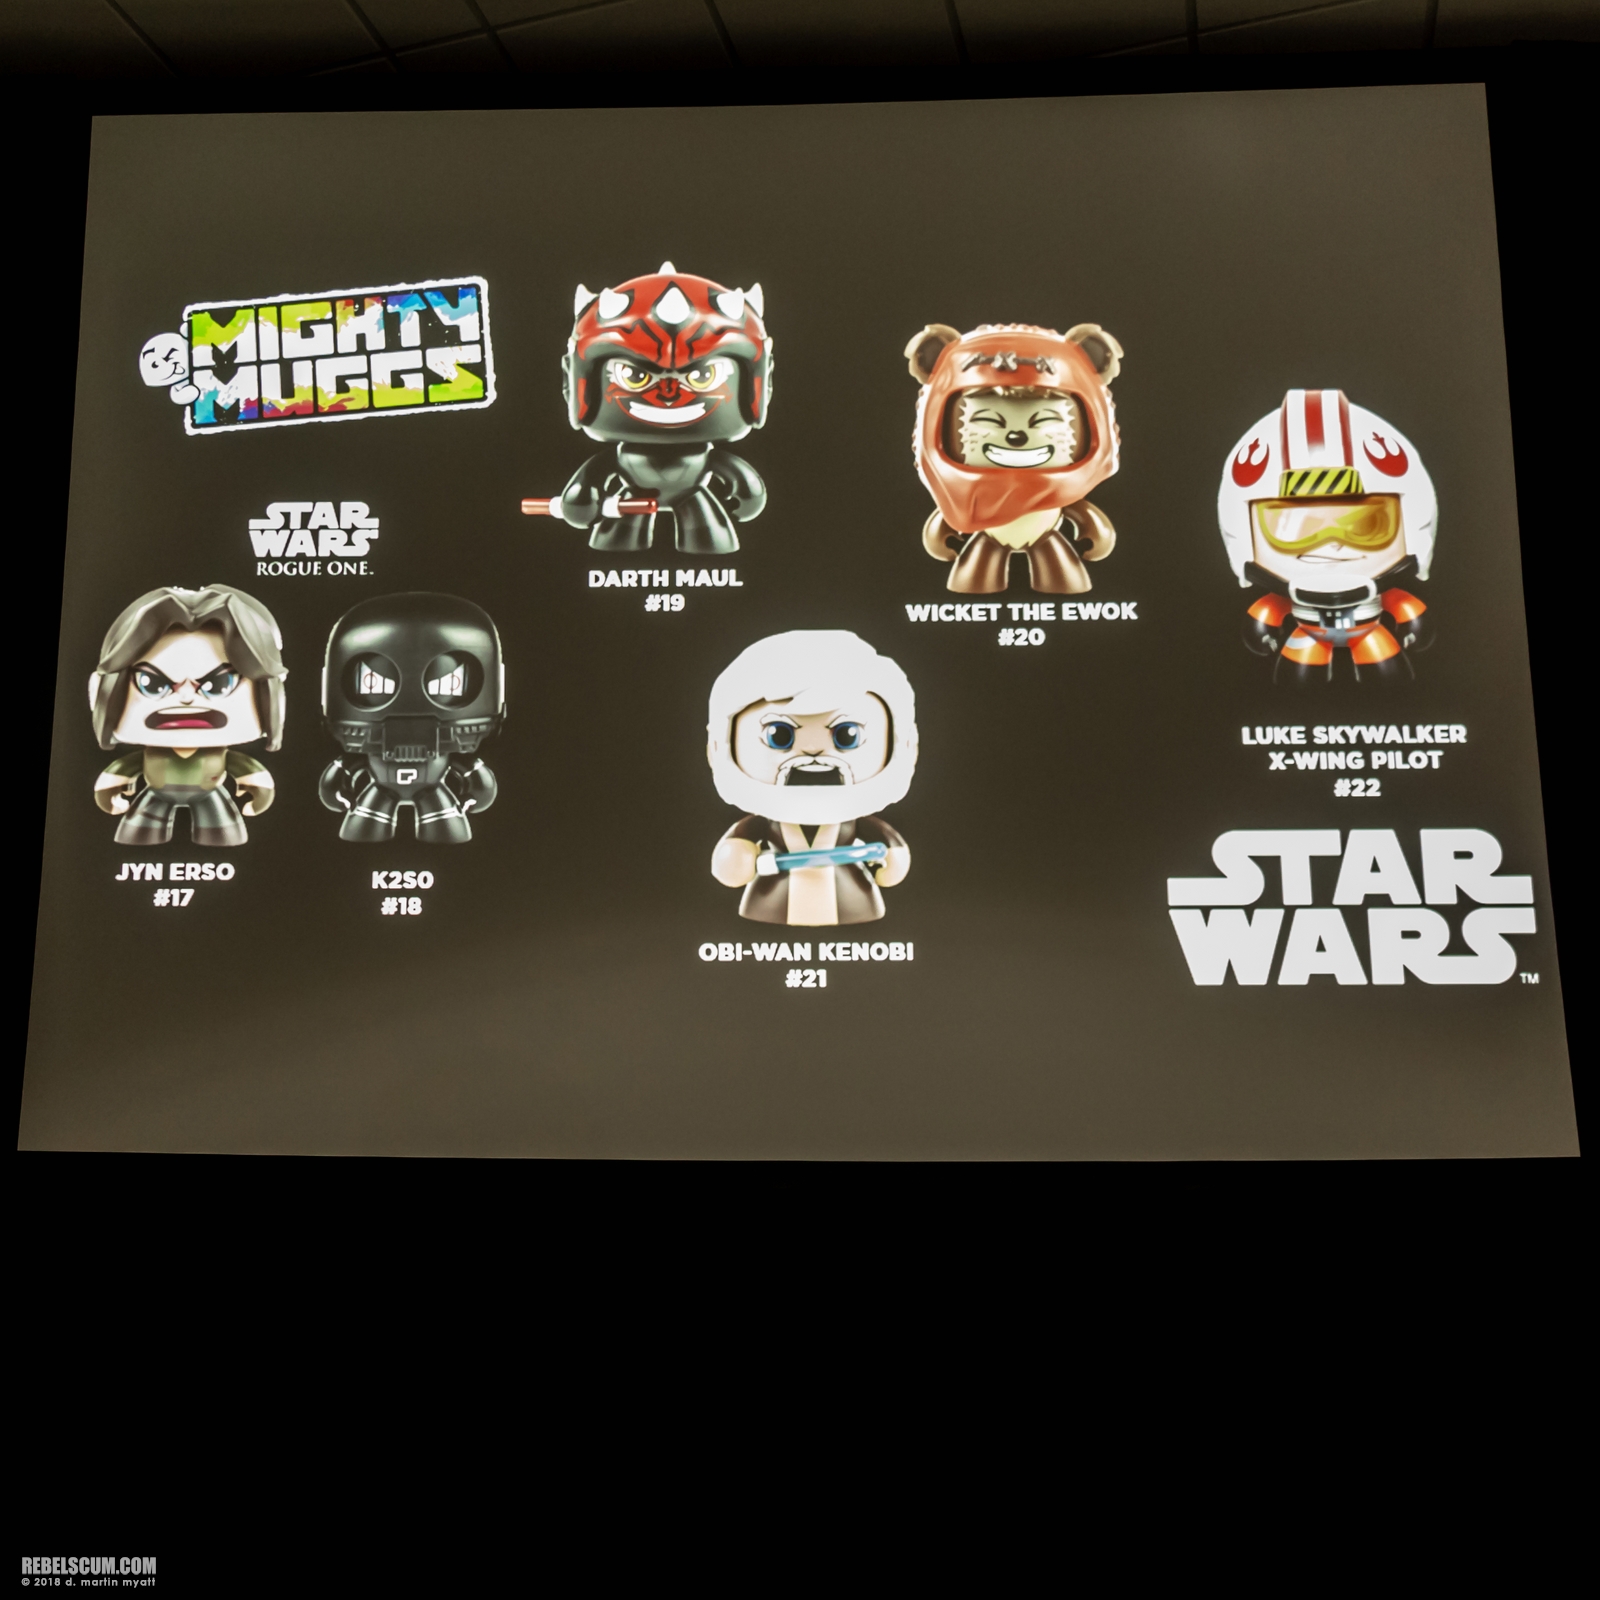 2018-San-Diego-Hasbro-Star-Wars-Panel-020.jpg